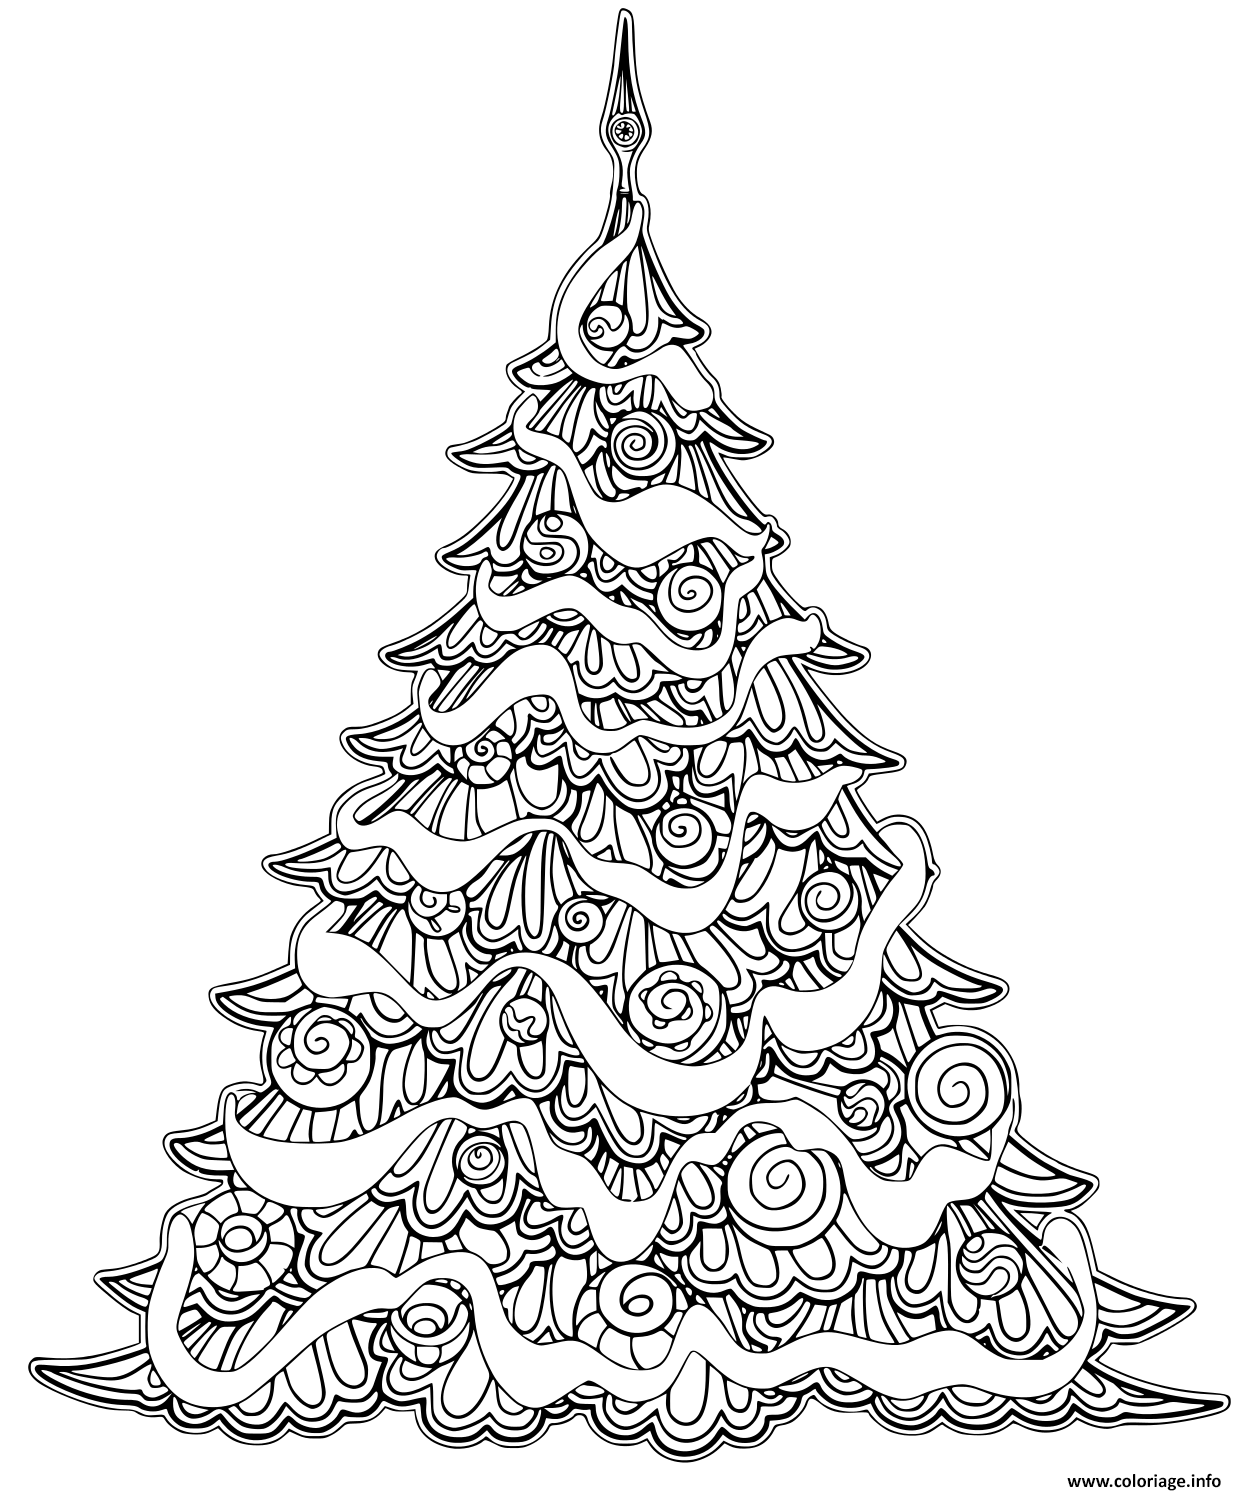 Dessin luxueux arbre de noel avec decorations Coloriage Gratuit à Imprimer